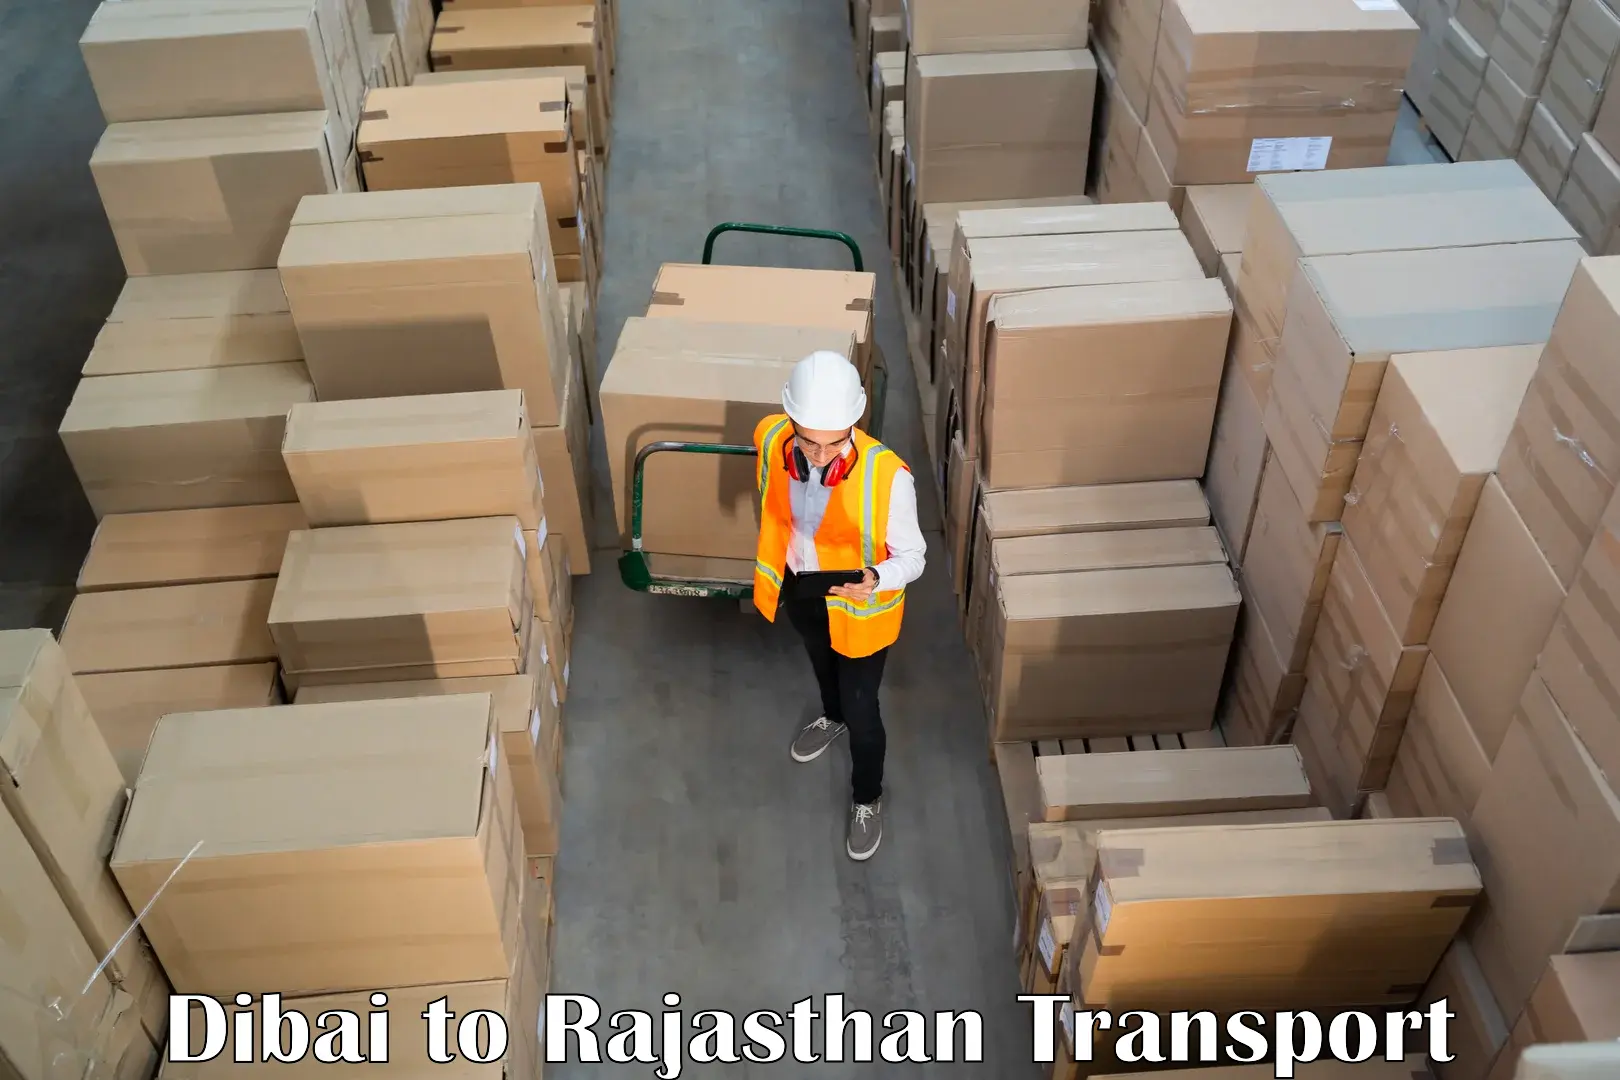 Shipping partner Dibai to Asind